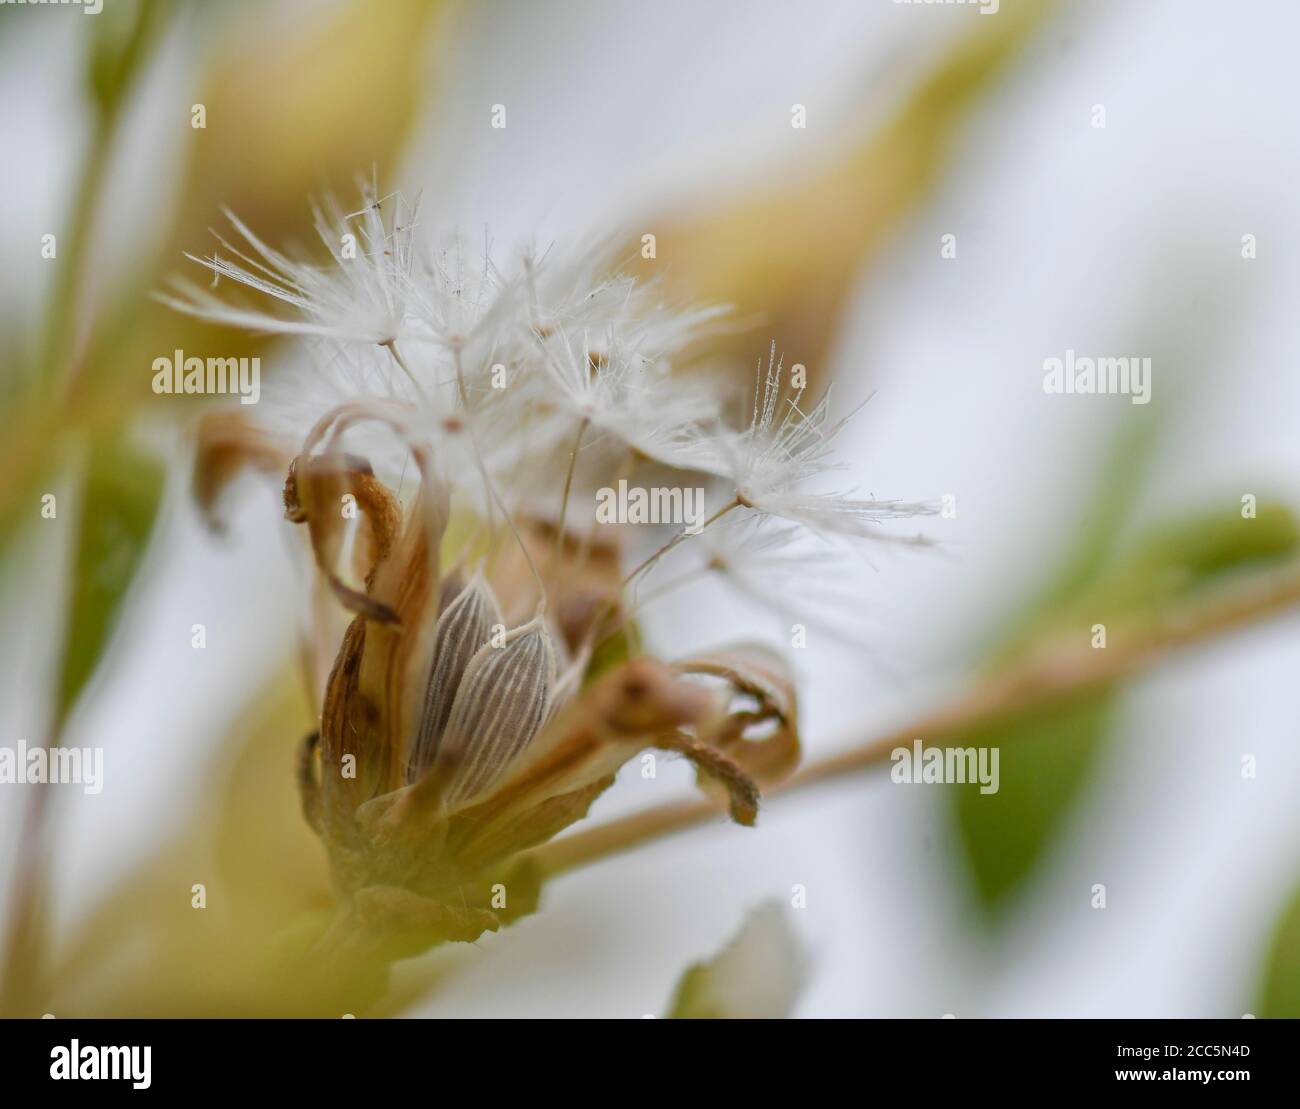 Macrofotografia dei semi di lattuga nel loro fiore Foto Stock